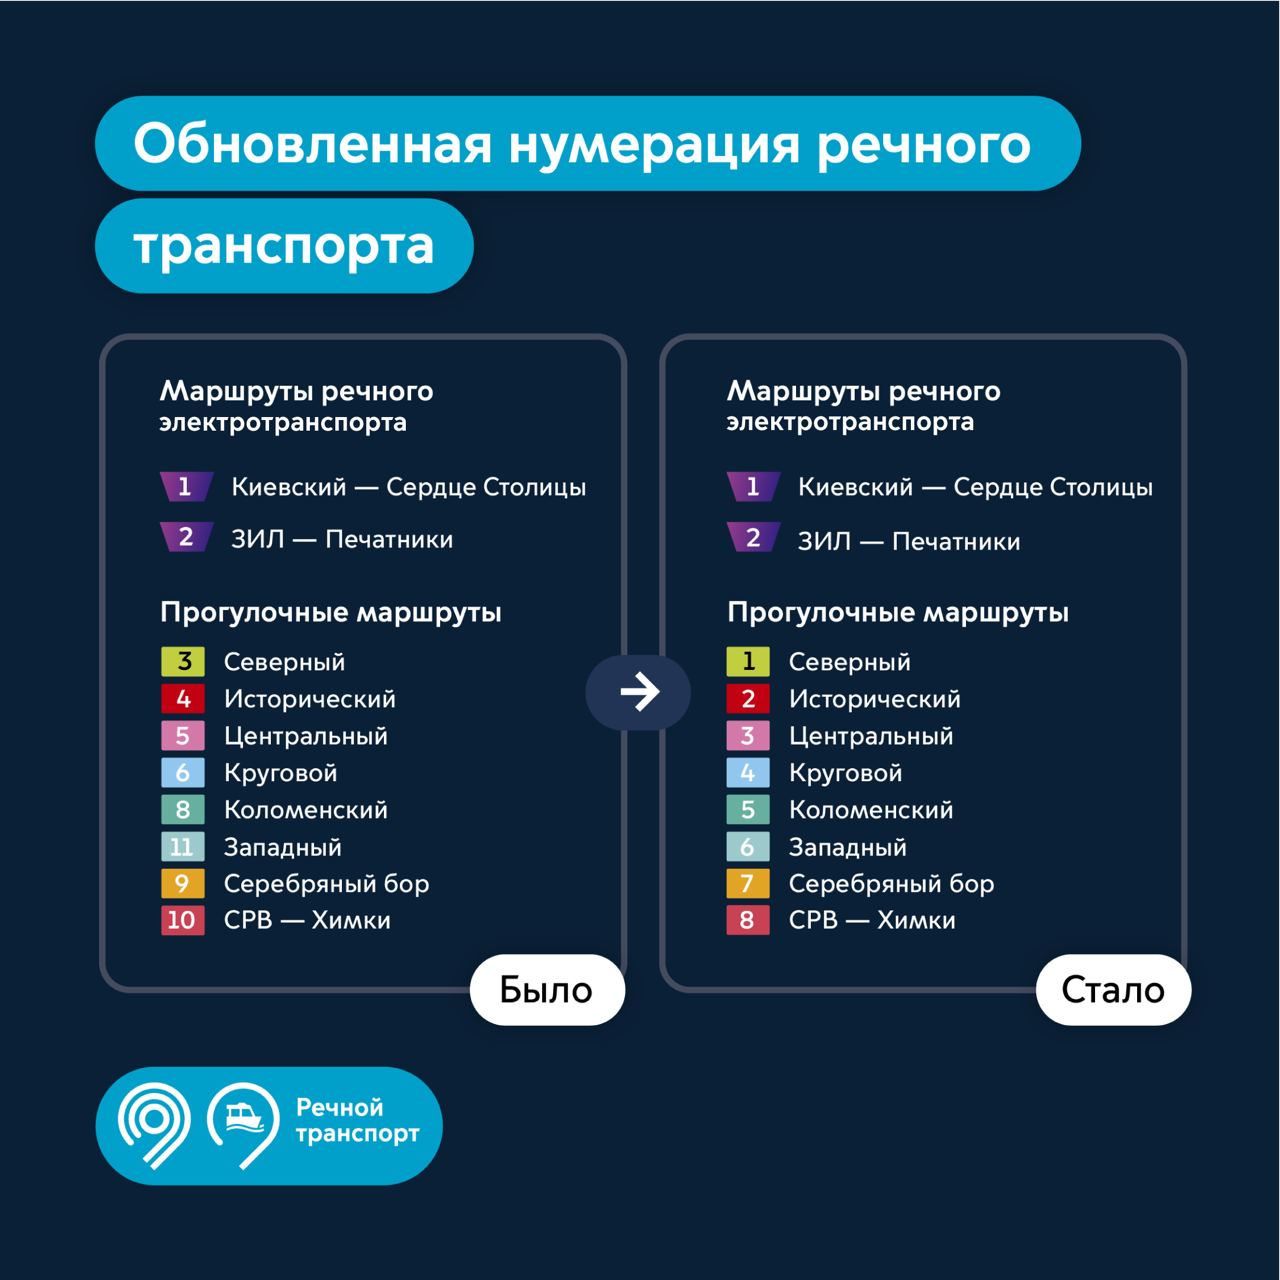 Власти Москвы решили изменить нумерацию прогулочных речных маршрутов